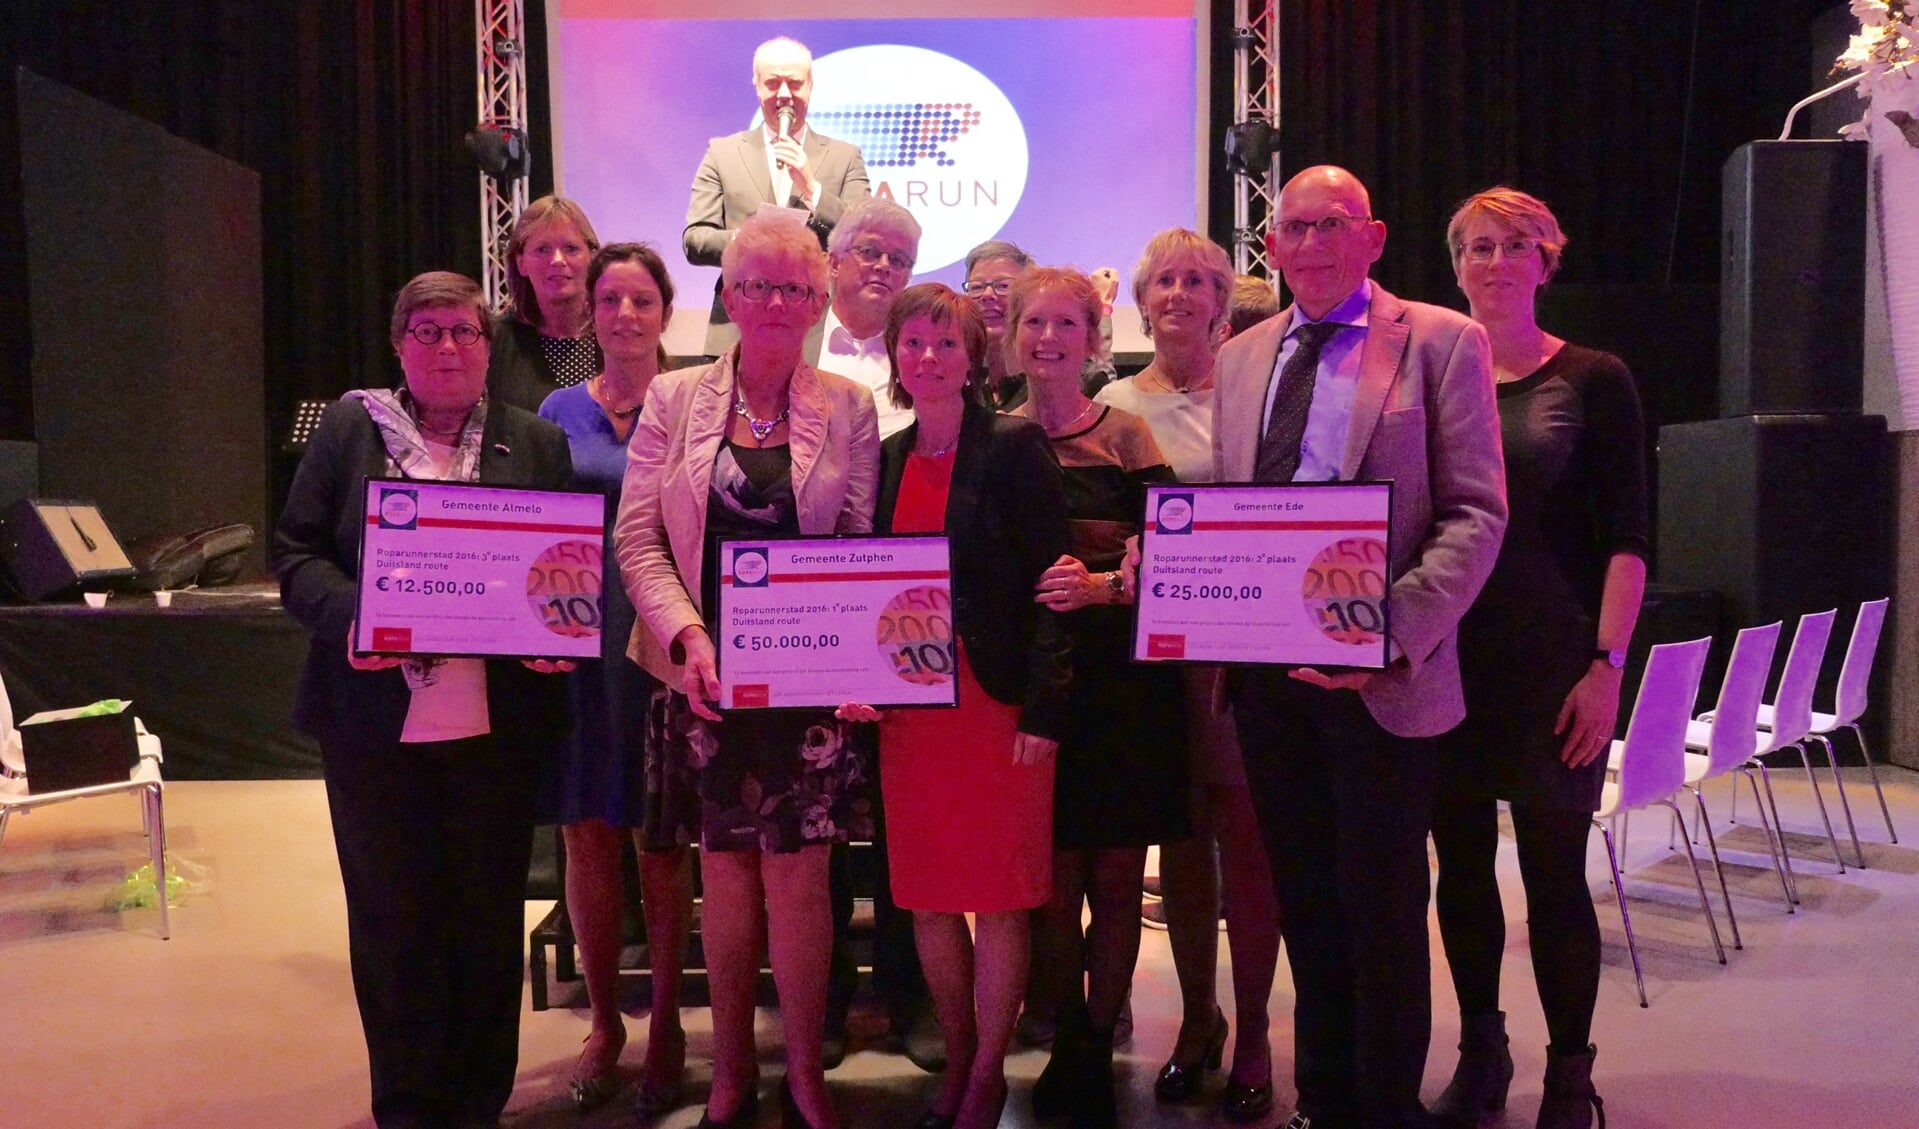 De winnende Roparunsteden met hun gewonnen bedrag: Zutphen € 50.000, Ede € 25.000 en Almelo € 12.500. Foto: PR